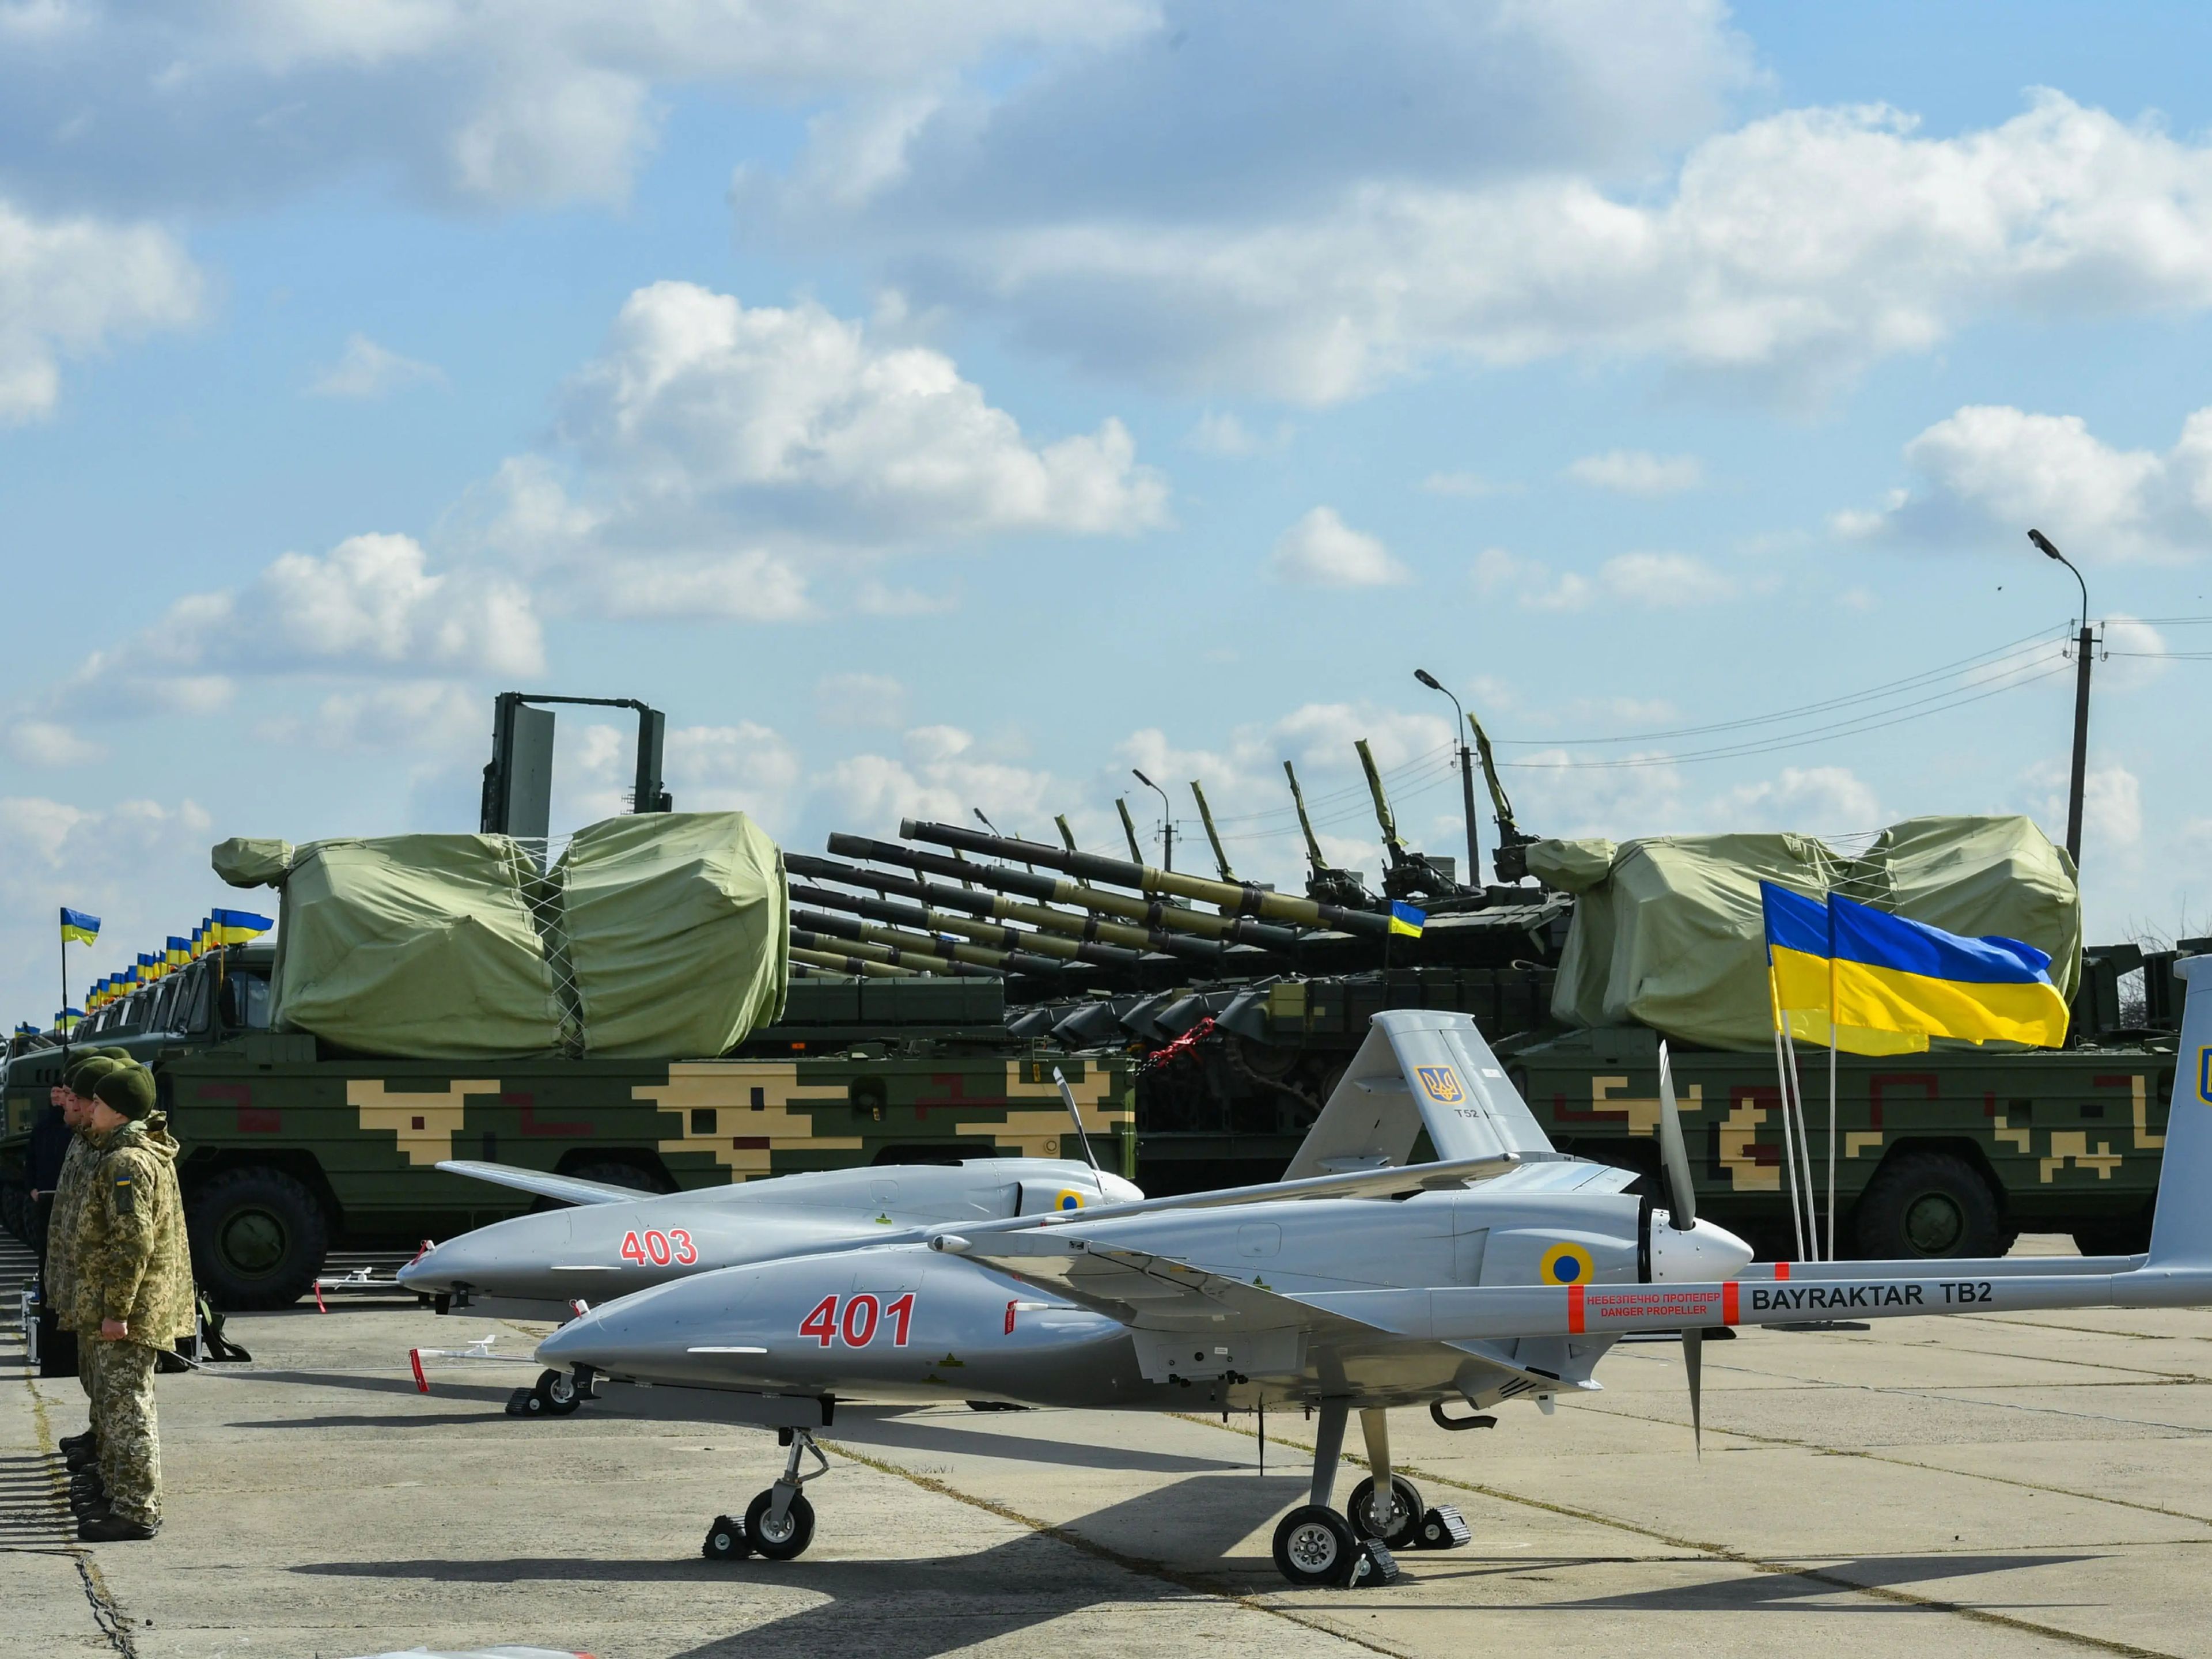 El dron Bayraktar TB2 UAV visto durante el vuelo de prueba en la base militar ubicada en Hmelnitski, Ucrania, el 20 de marzo de 2019.